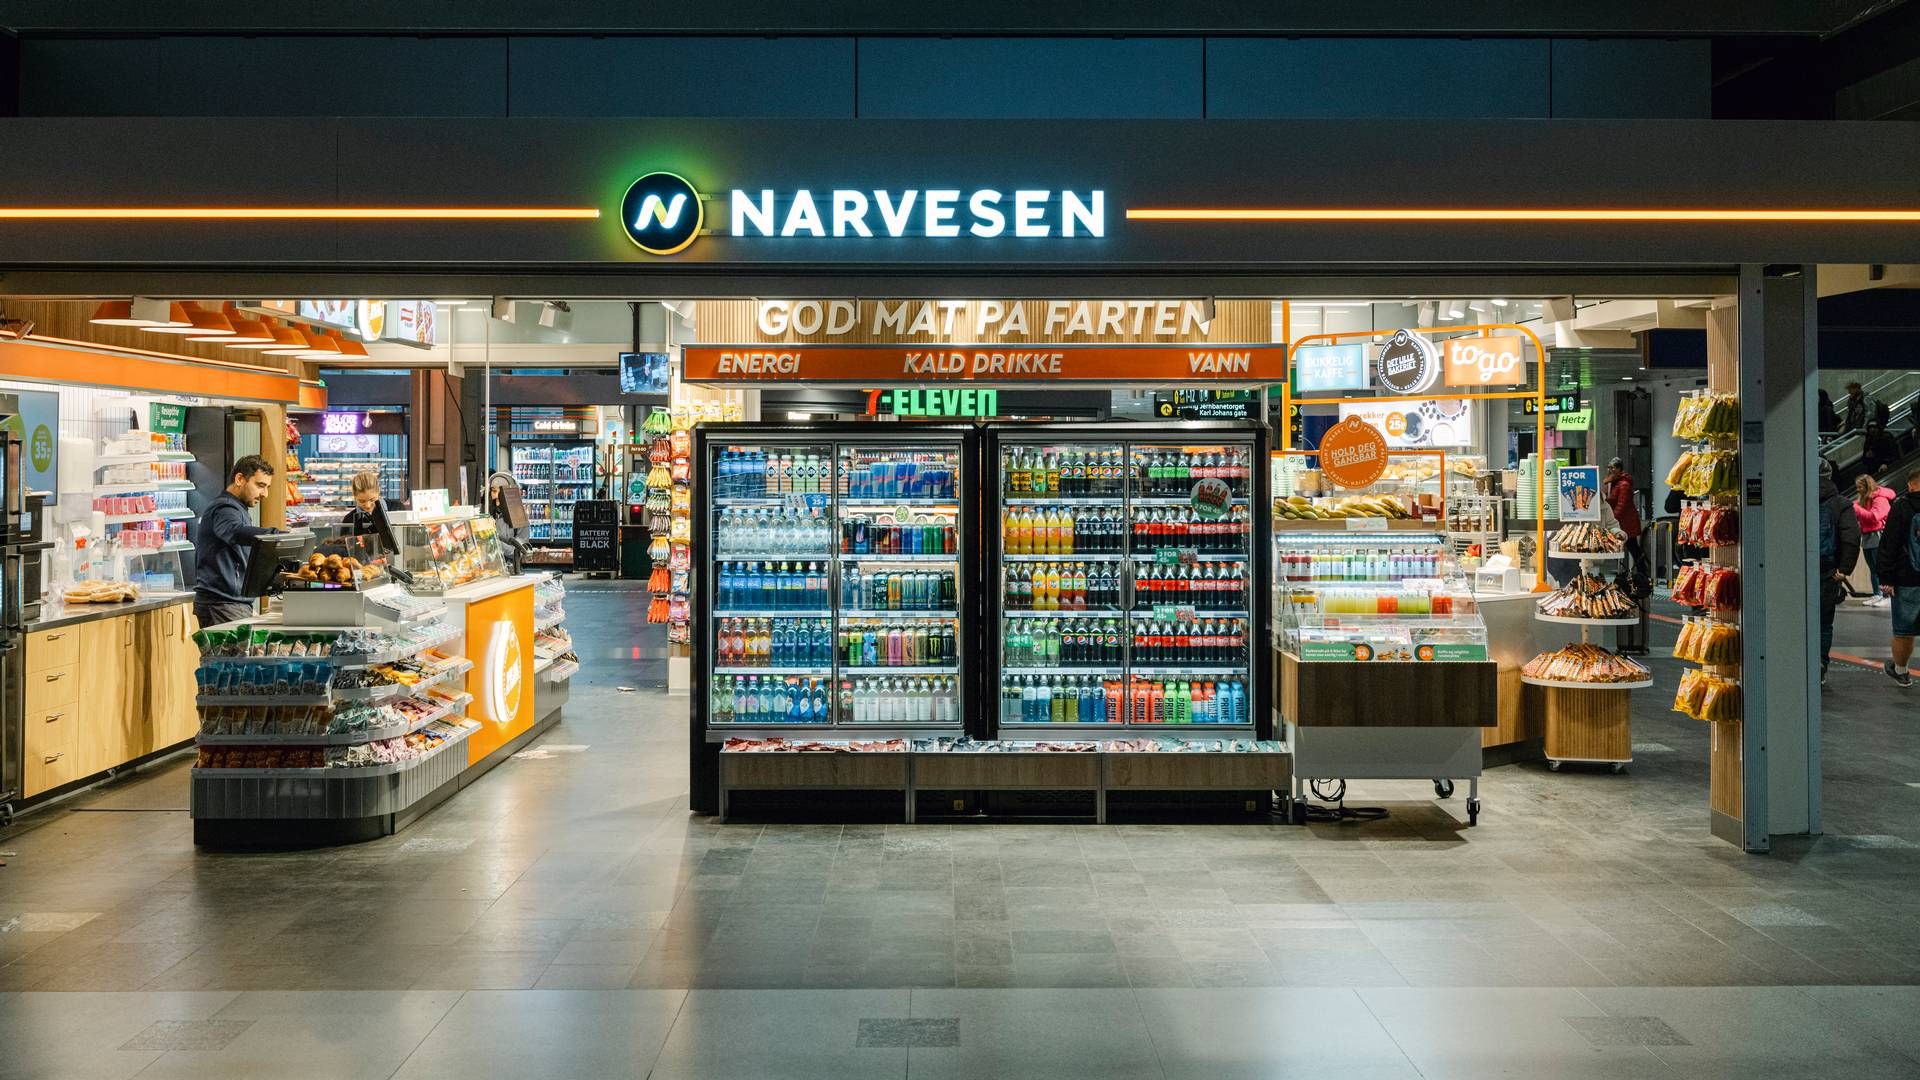 KAMPANJE: Narvesen vil ha en egen markering av pressefrihetens dag, på alle sine kiosker i Norge. | Foto: Gøril Huse / HandelsWatch